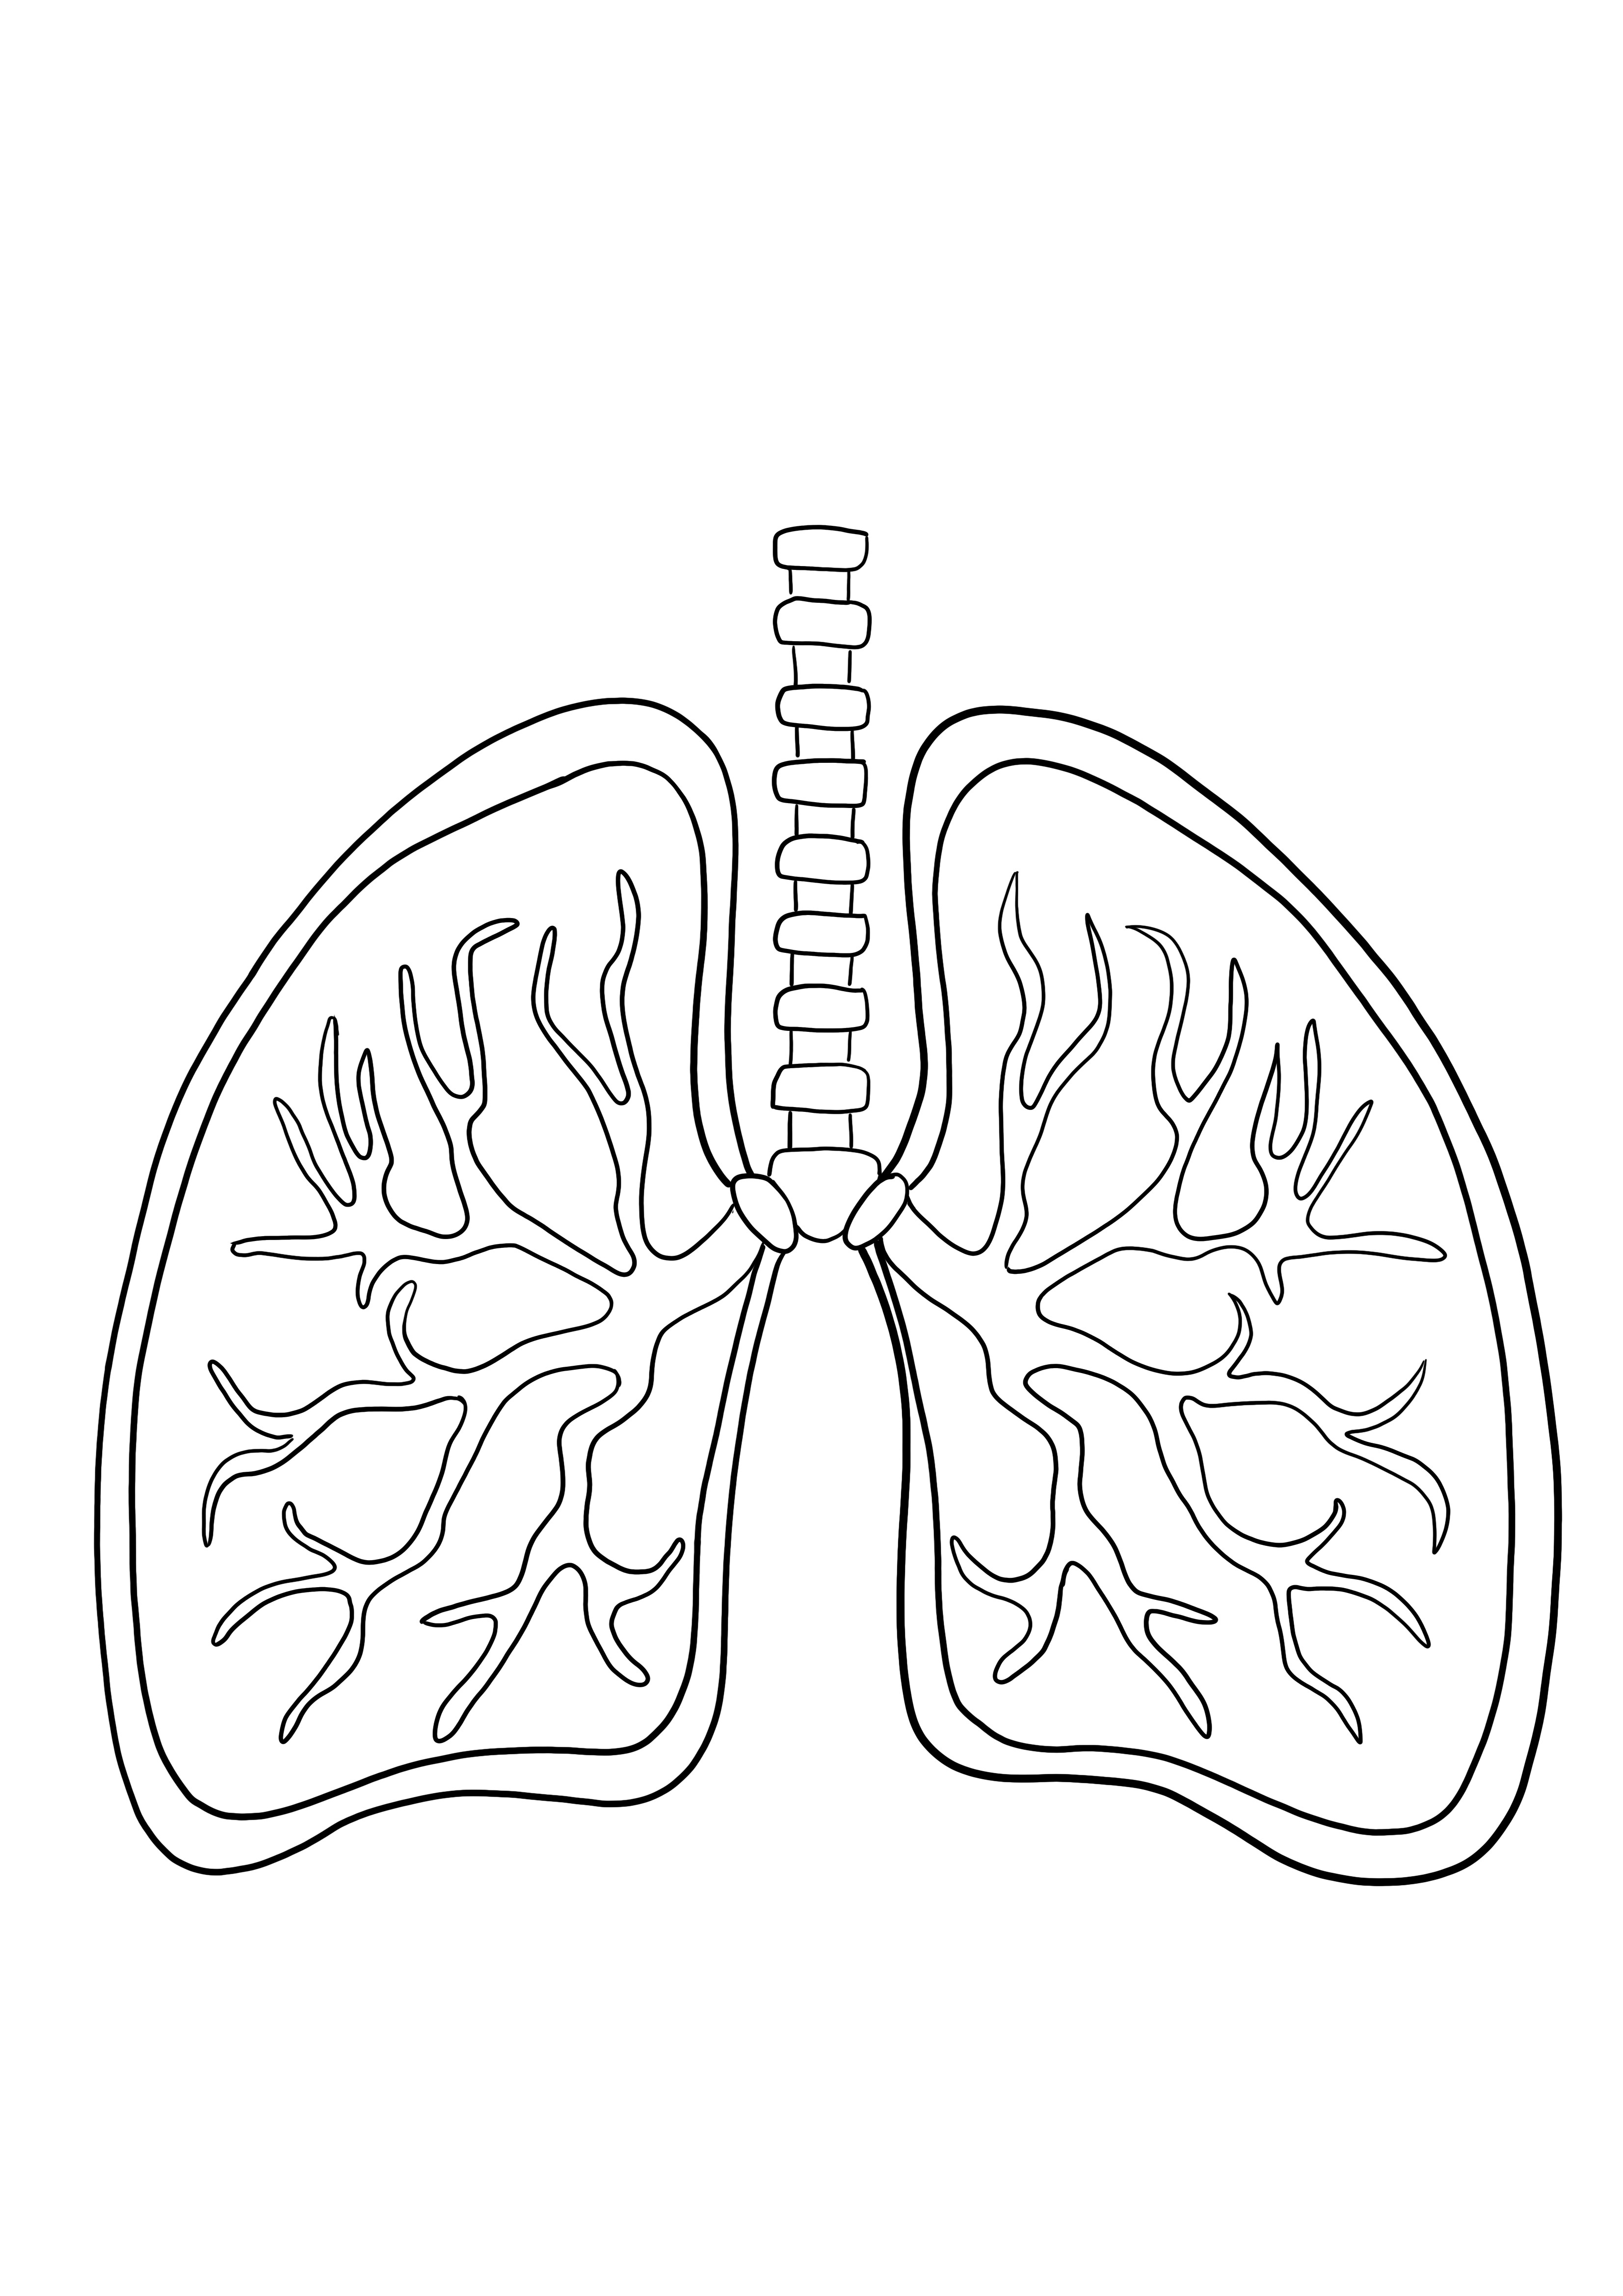 Coloritura dei polmoni e immagine di stampa gratuita